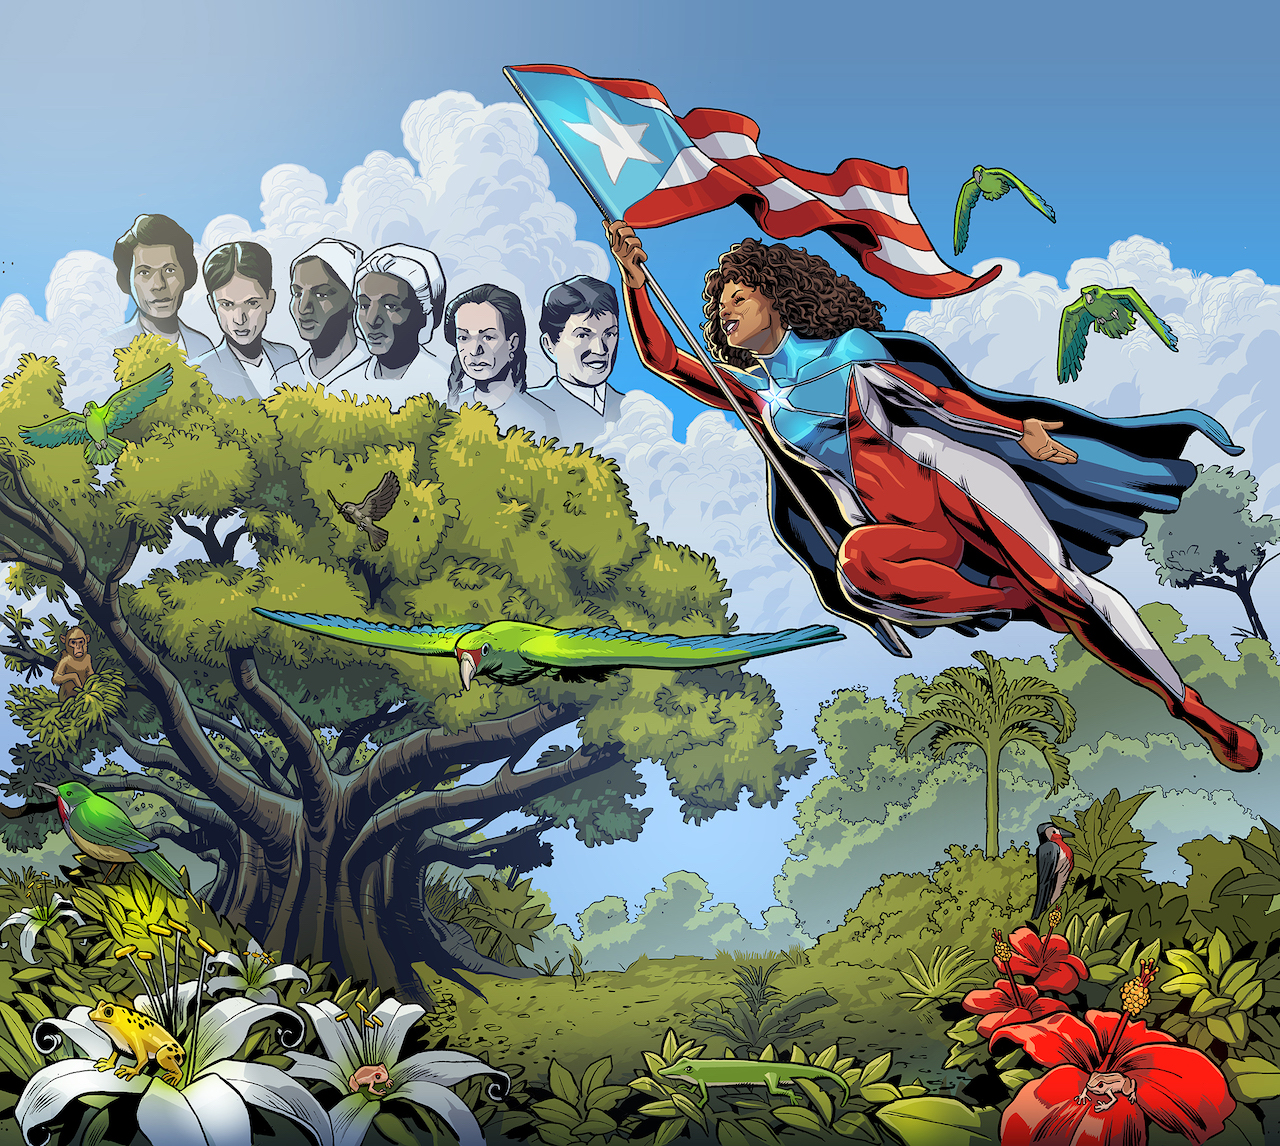 Conmemorando a las ancestras boricuas y haciendo alusión a la flora y fauna de Puerto Rico, el mural tiene el propósito de transportar a las personas a la isla caribeña. 